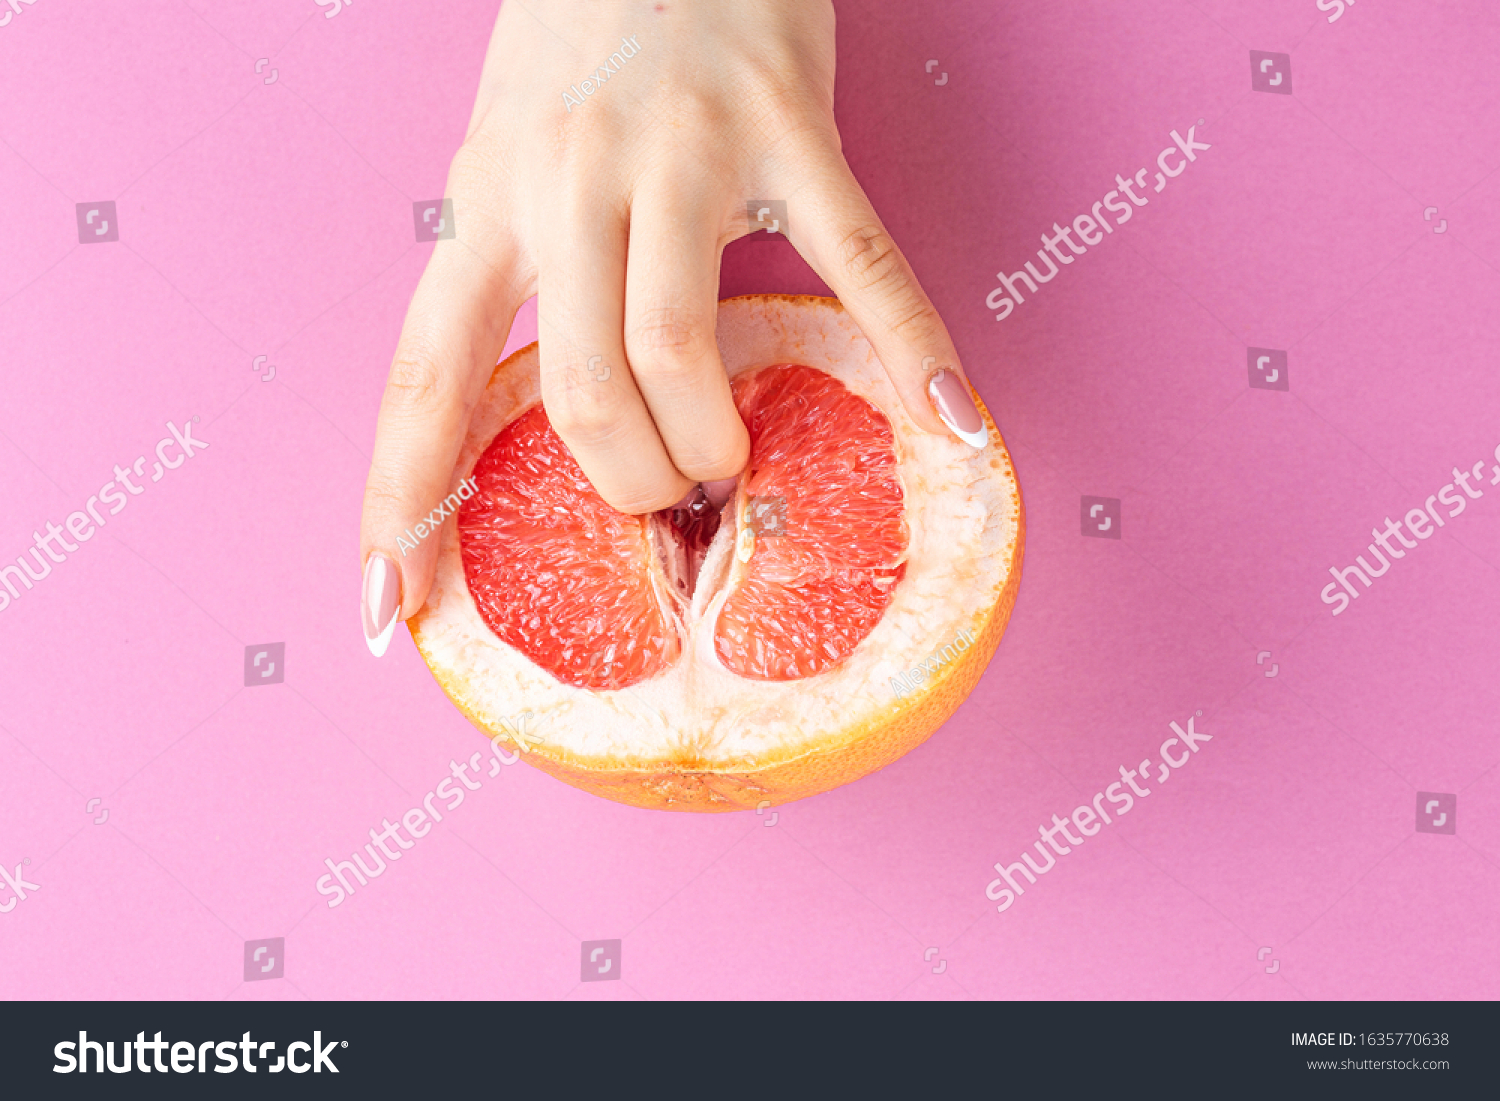 Грейпфрут между ног